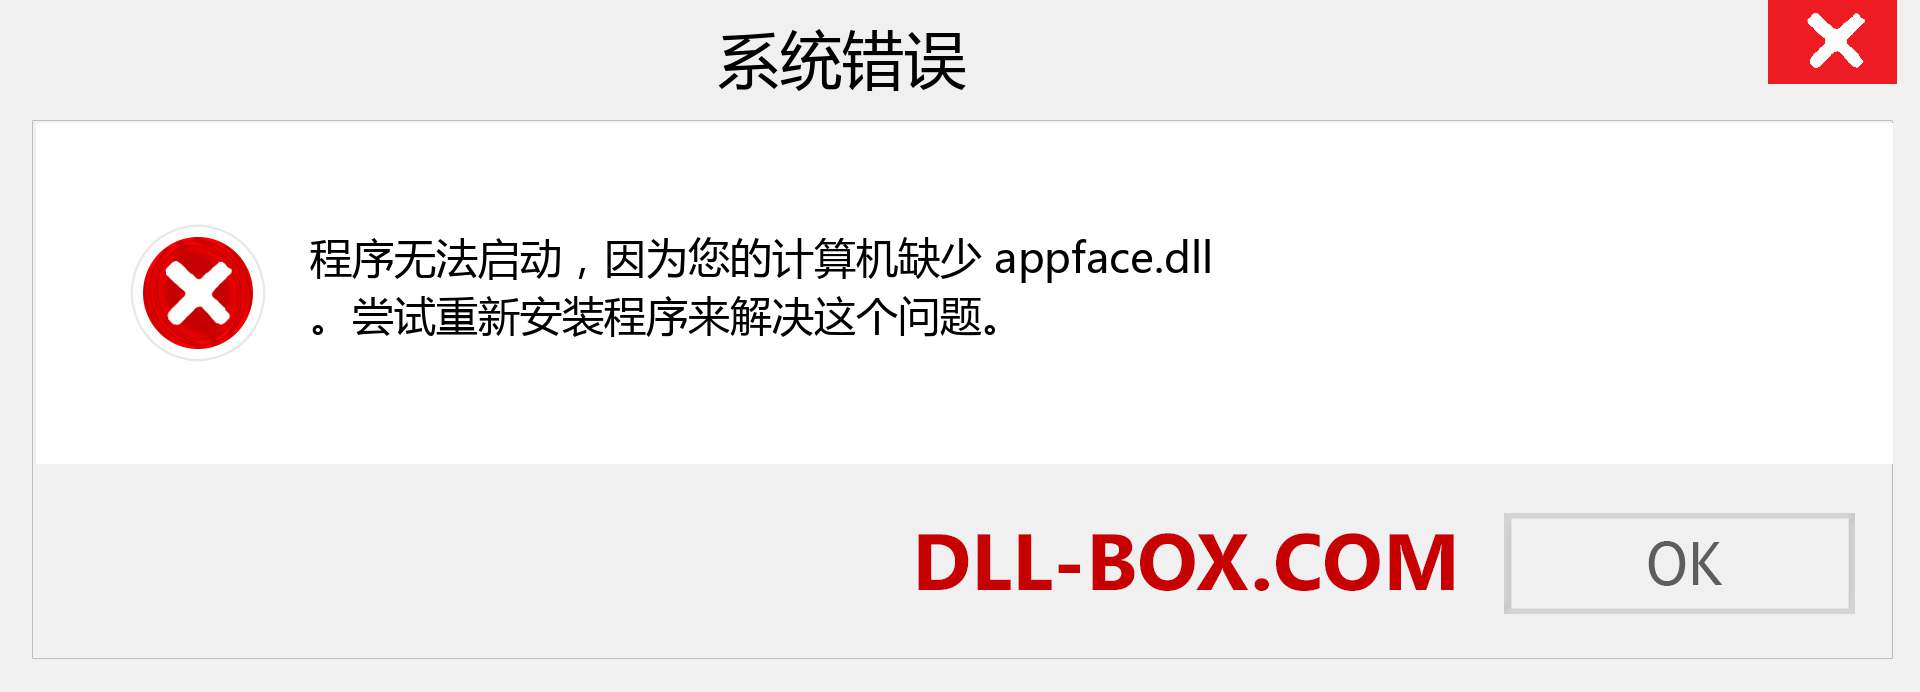 appface.dll 文件丢失？。 适用于 Windows 7、8、10 的下载 - 修复 Windows、照片、图像上的 appface dll 丢失错误